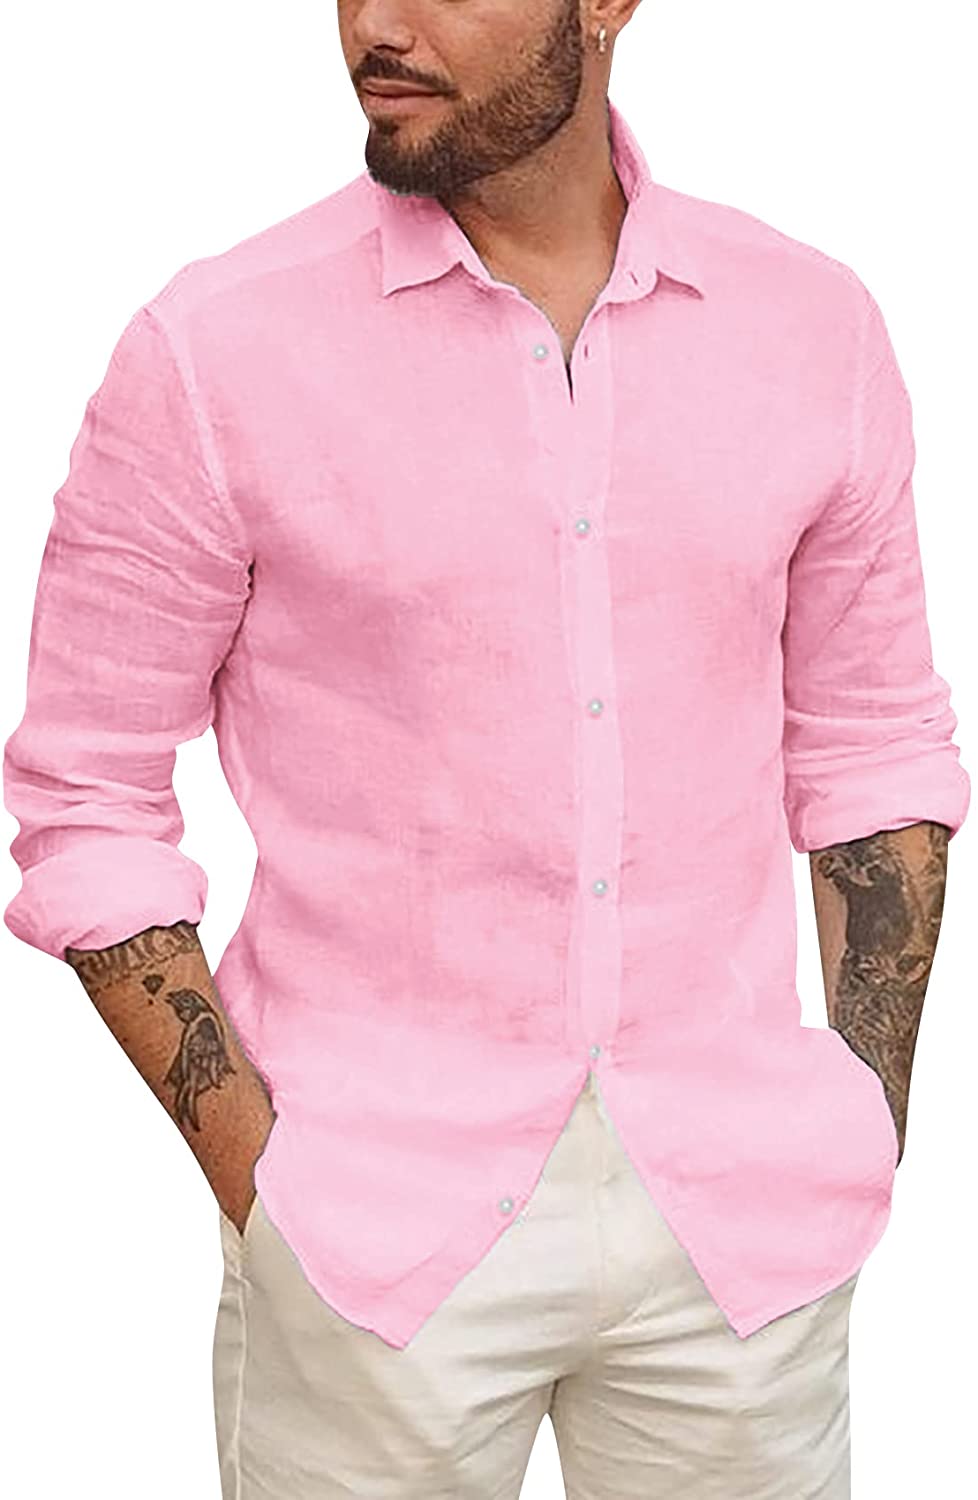 Mens Button Up Shirts Long Sleeve Linen Beach Casual Cotton Summer  Lightweight T